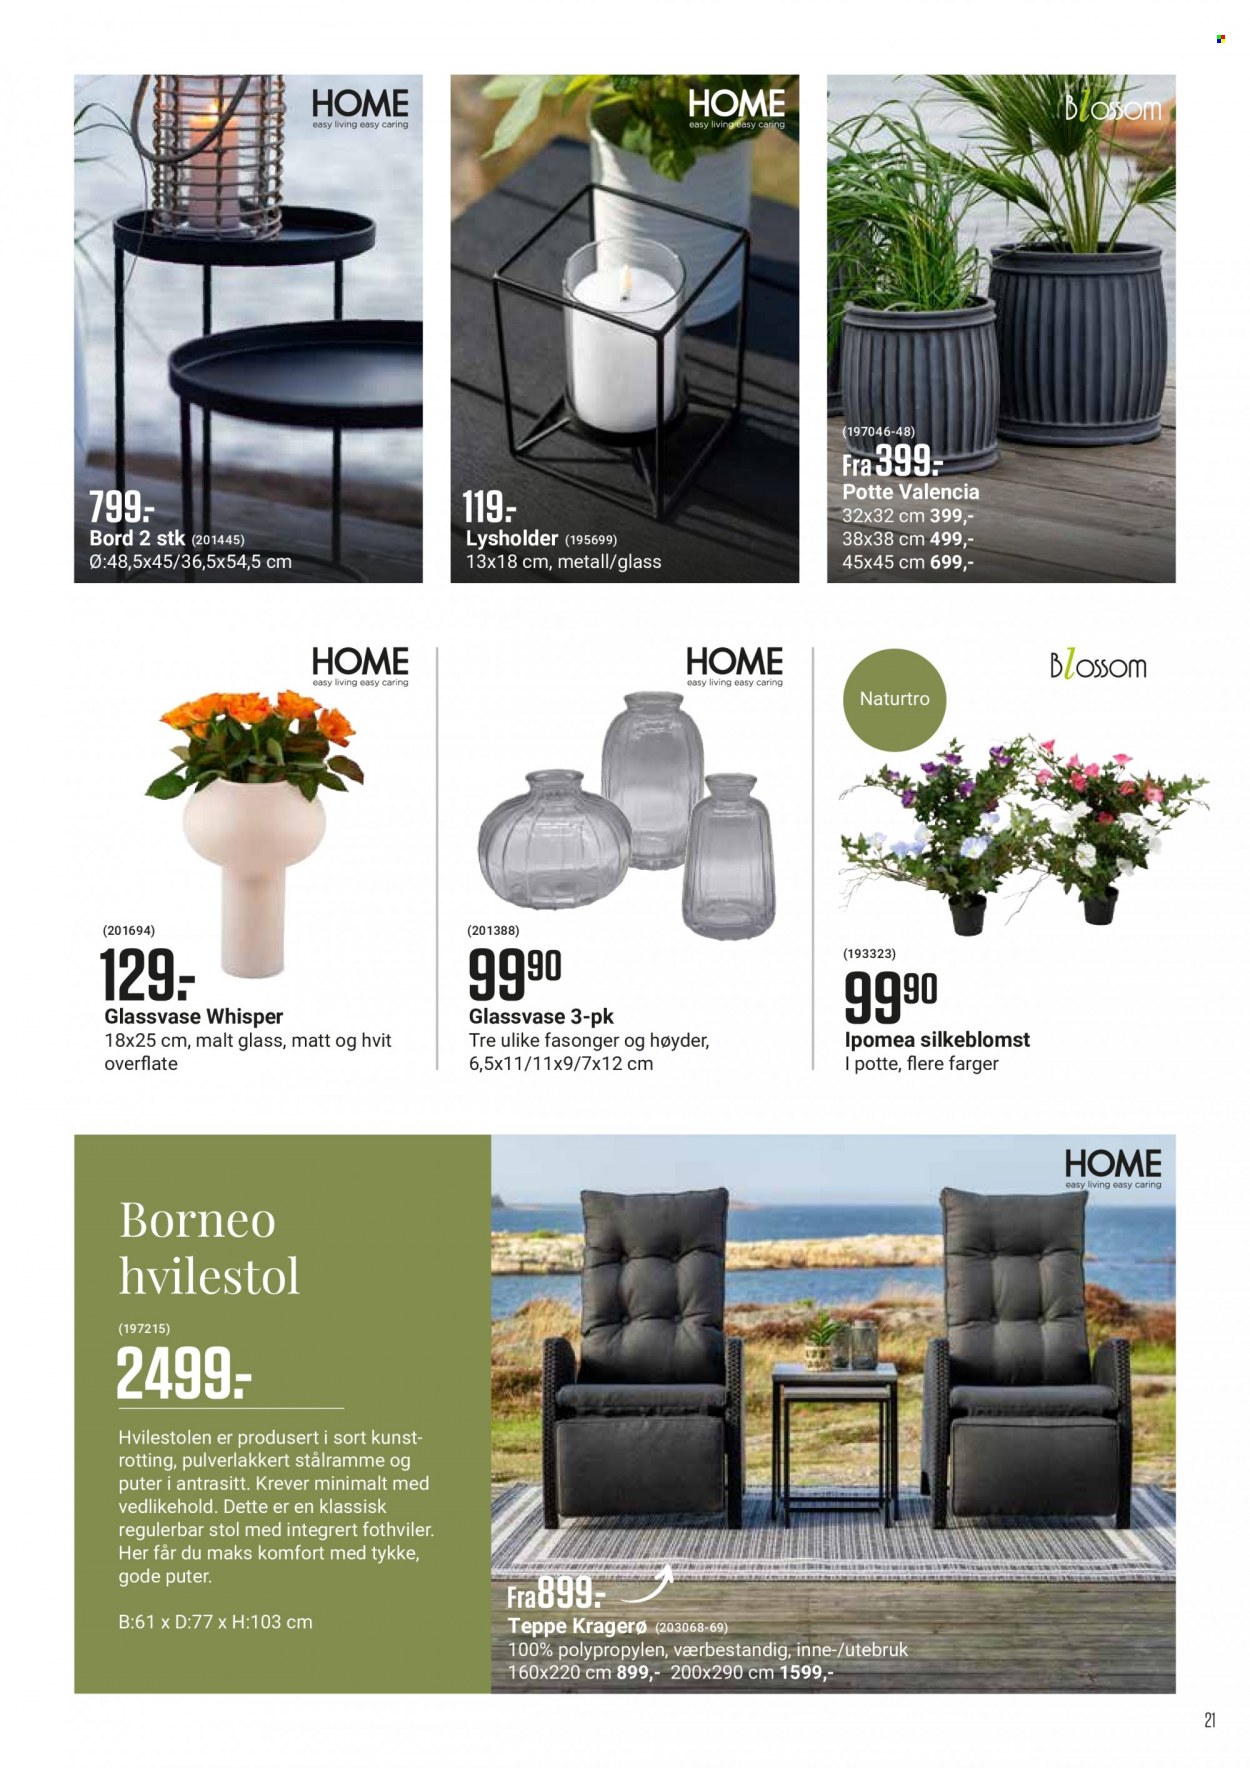 Kundeavis Europris - Produkter fra tilbudsaviser - blossom, bord, hvilestol, puter, teppe, stol. Side 21.